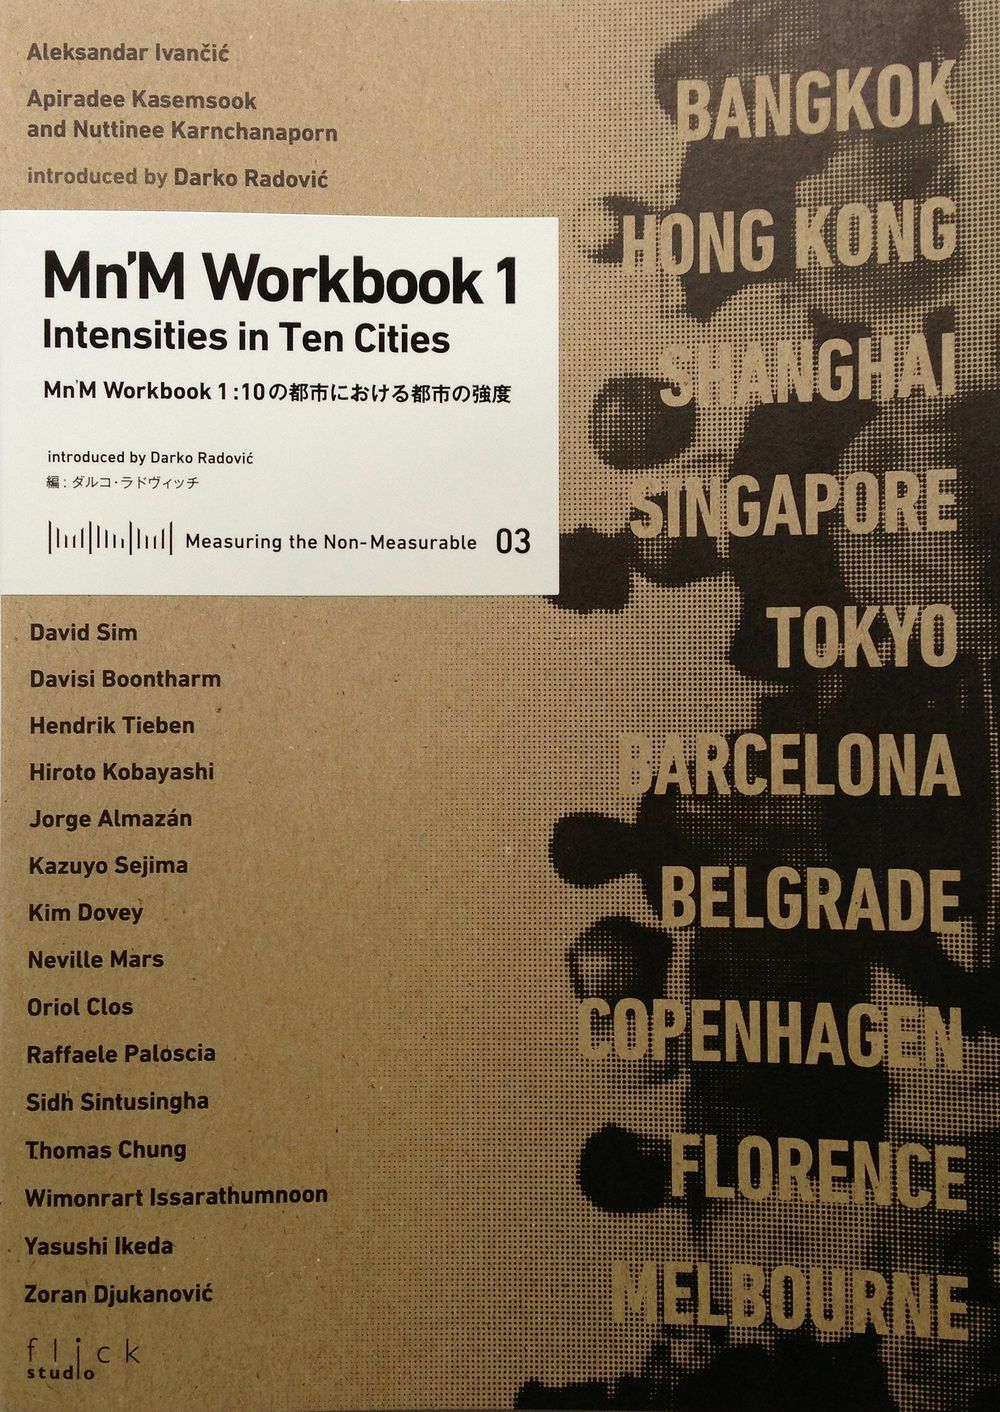 Mn'M workbook 1 : intensities in ten cities